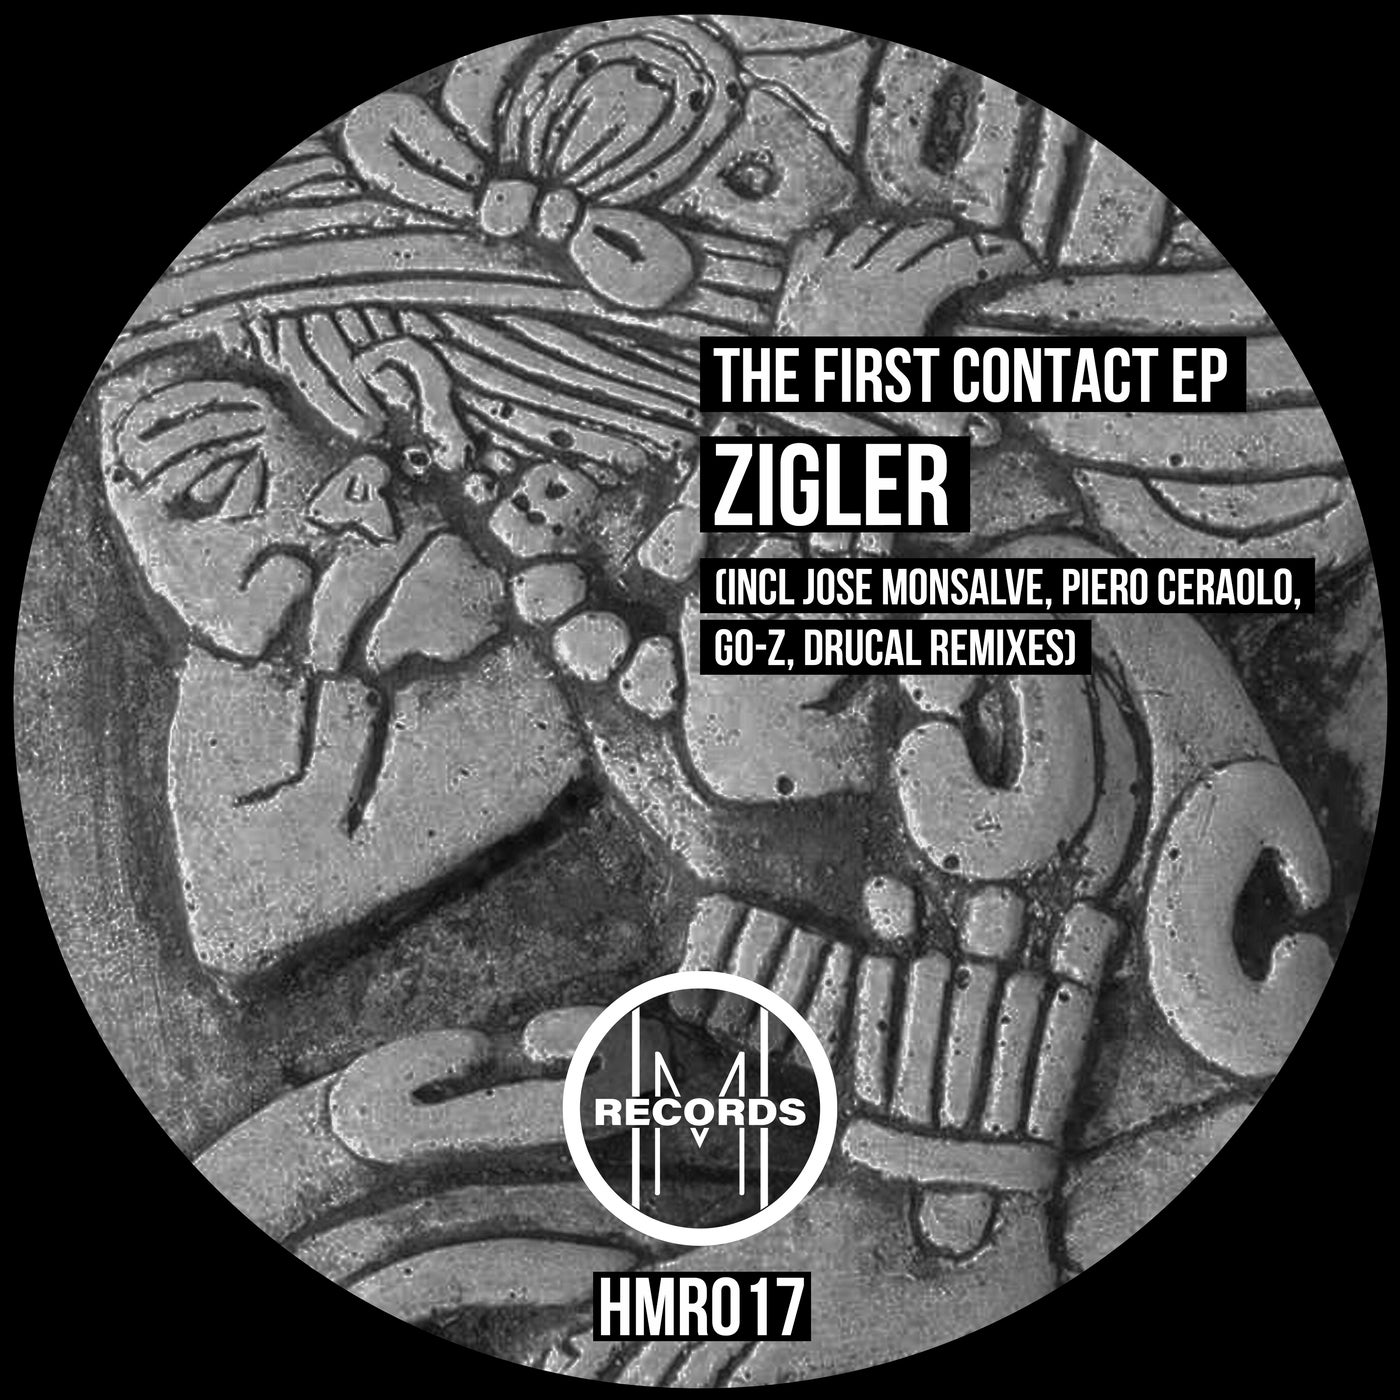 Zigler music download - Beatport